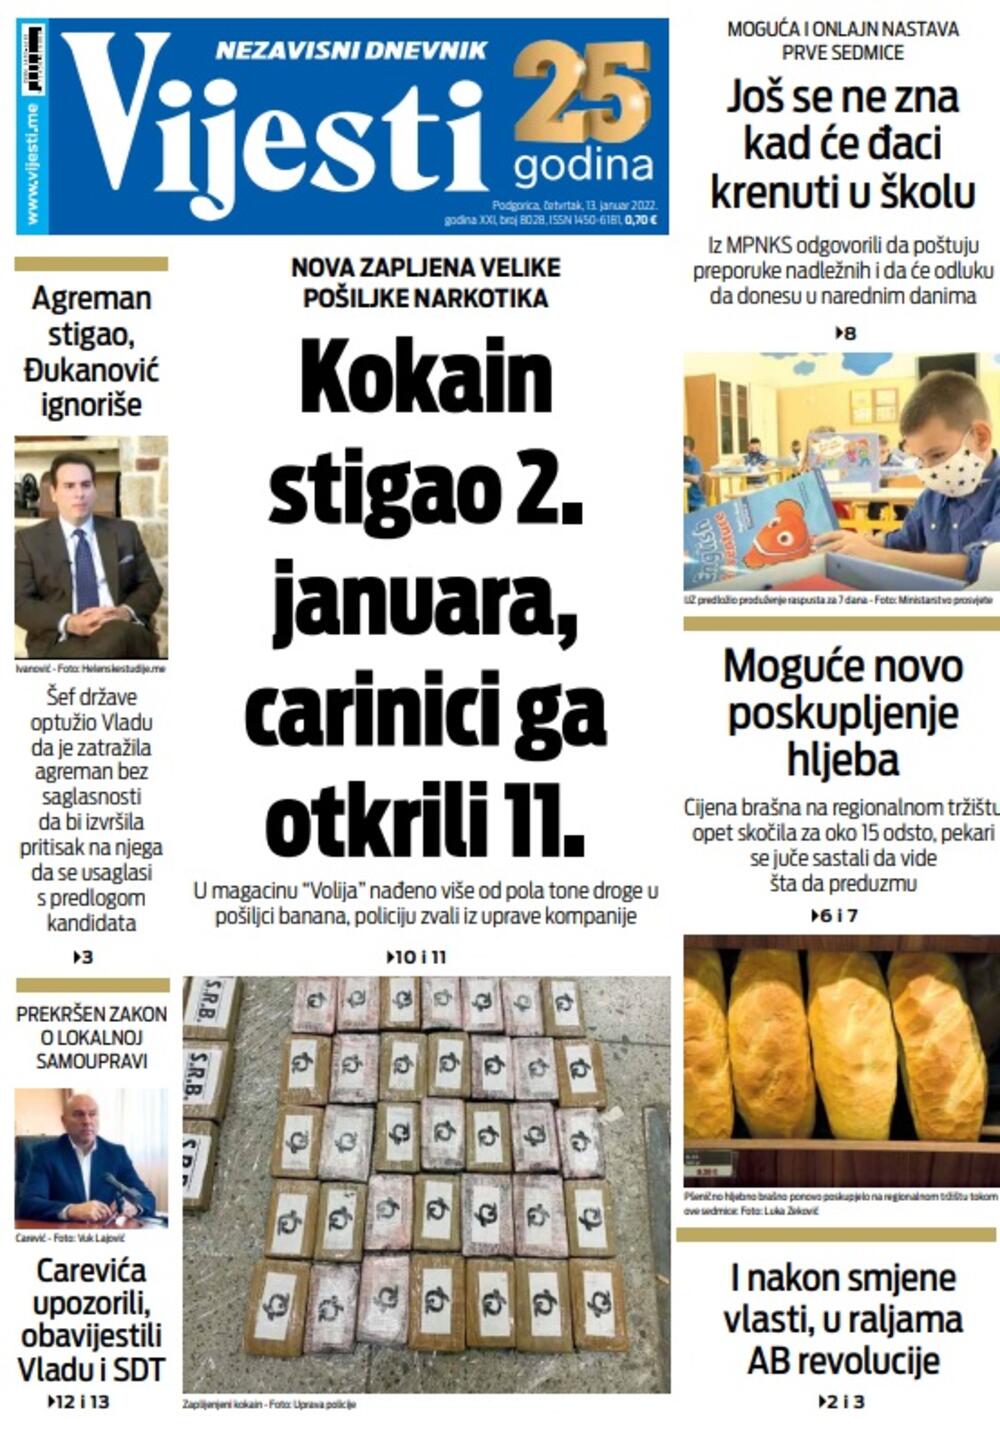 Naslovna strana "Vijesti" za četvrtak 13. januar 2022. godine, Foto: Vijesti